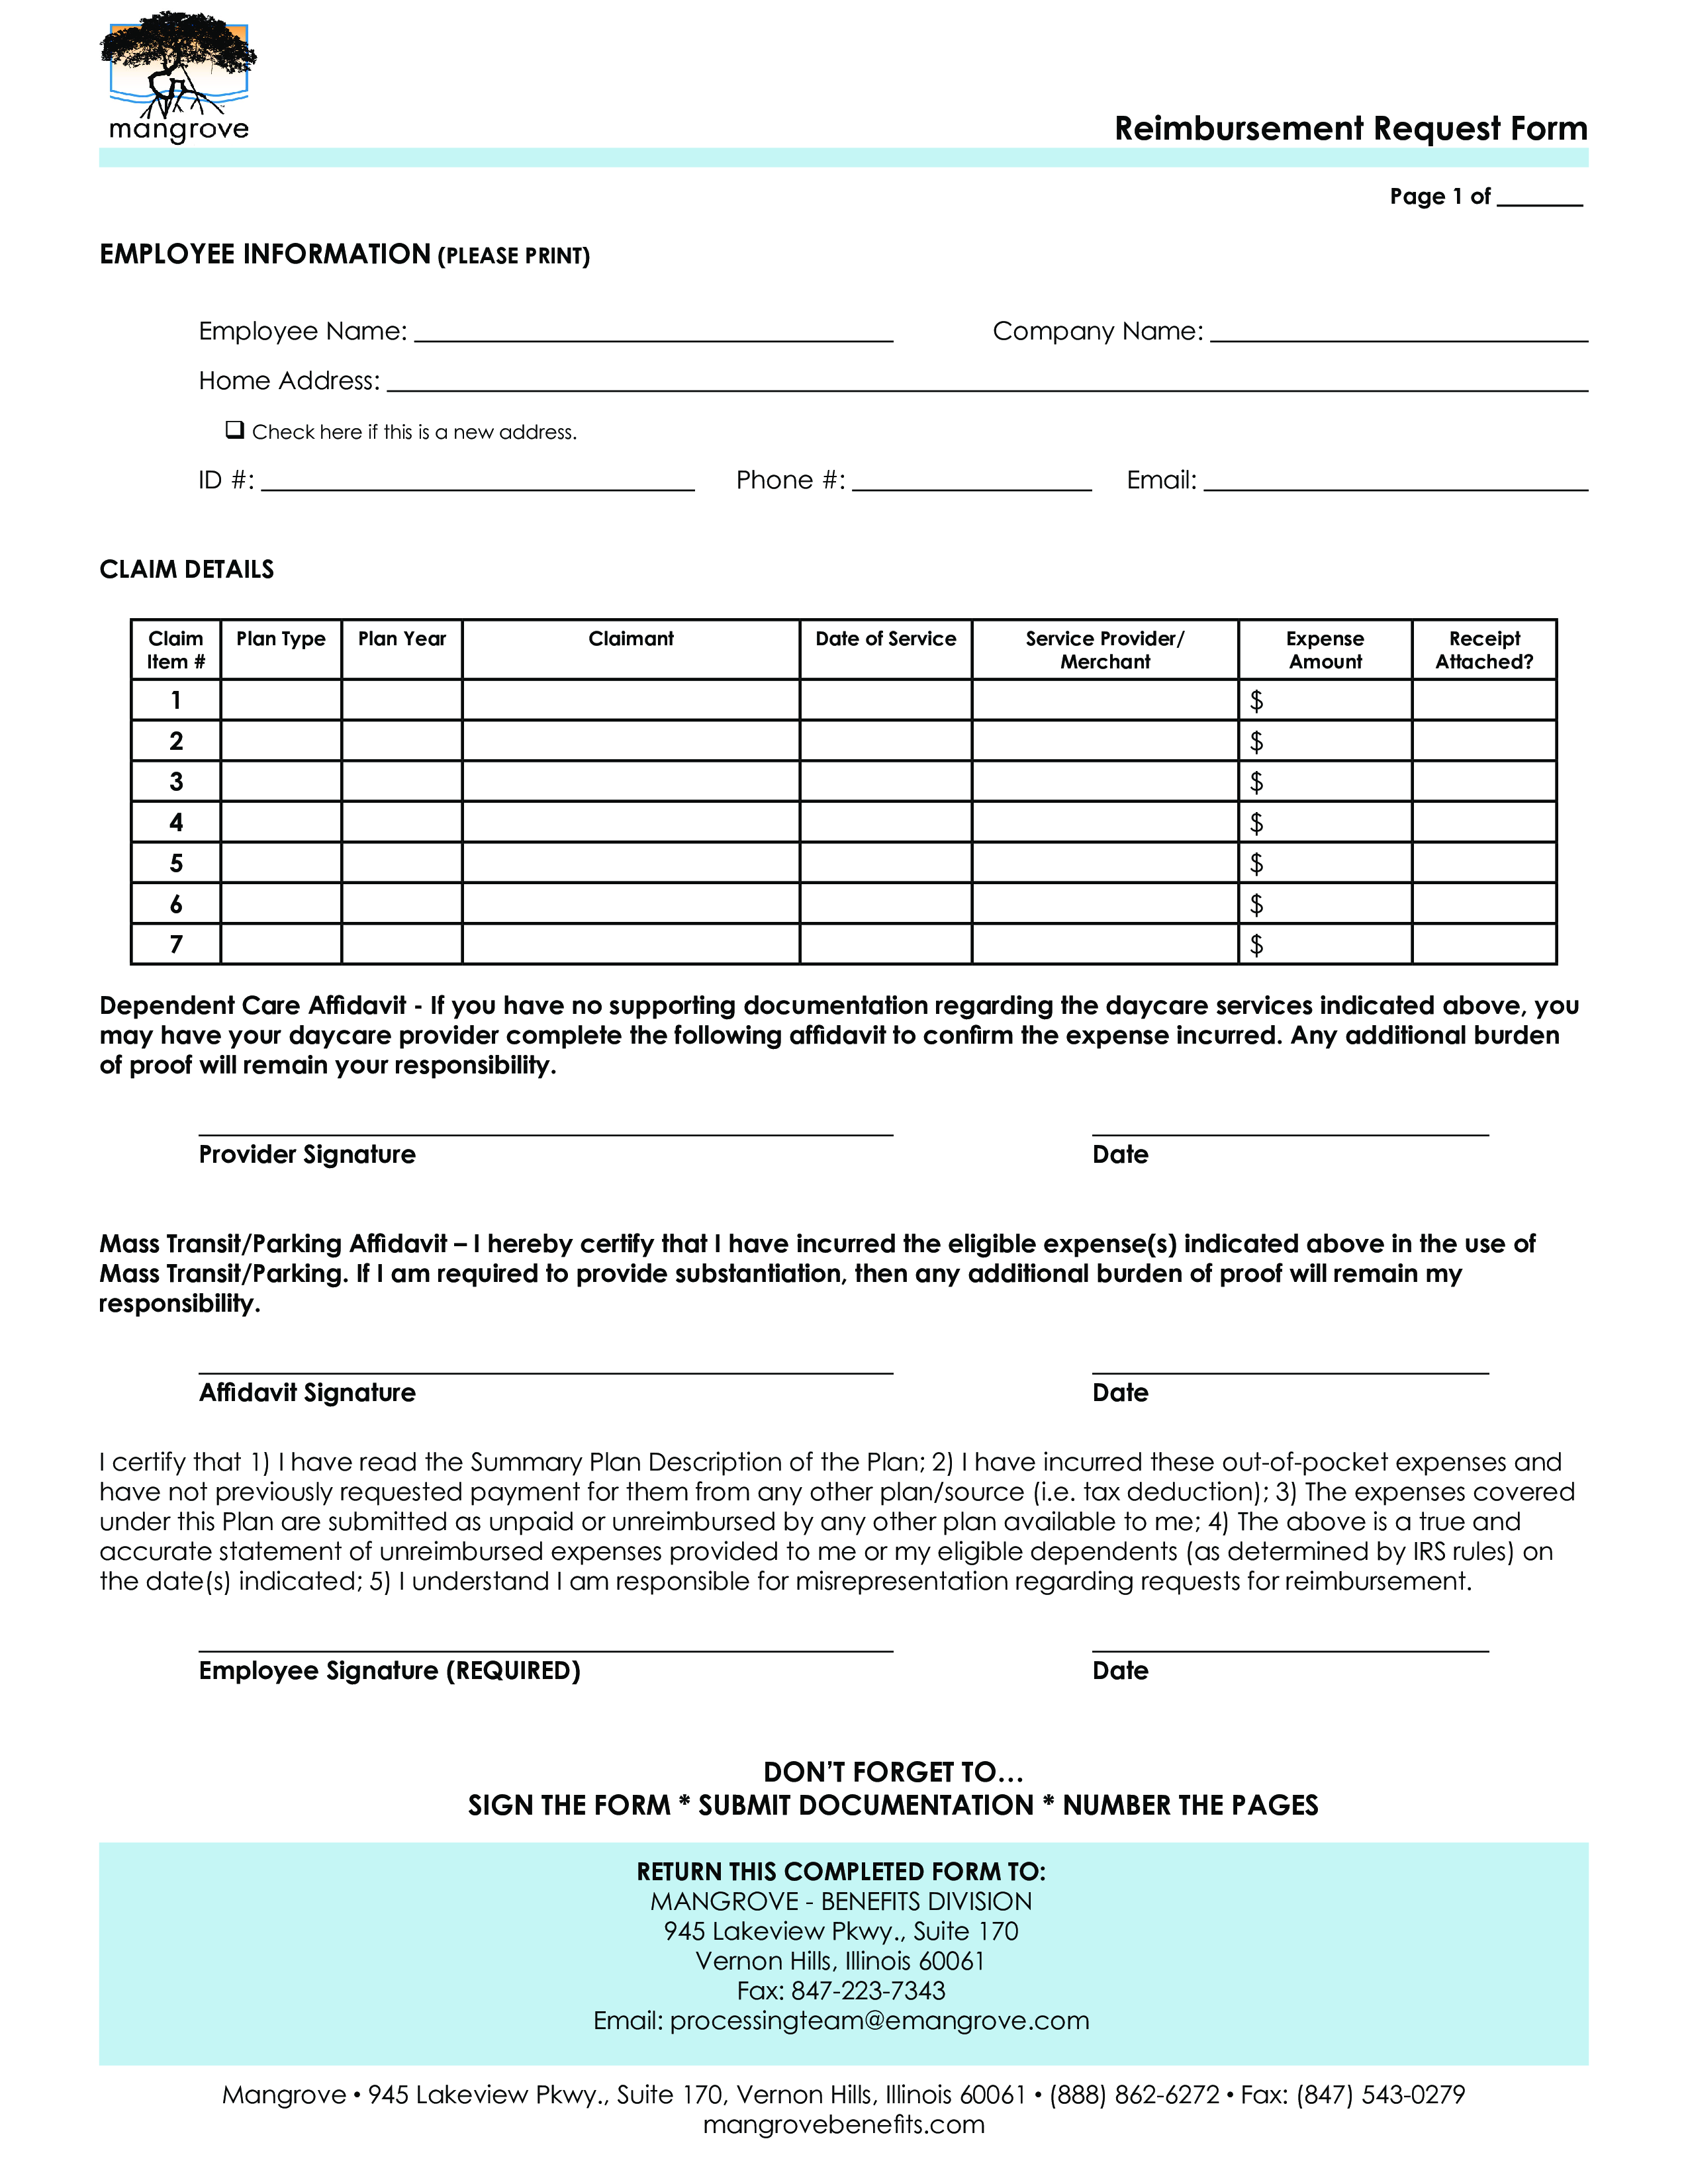 reimbursement request form plantilla imagen principal